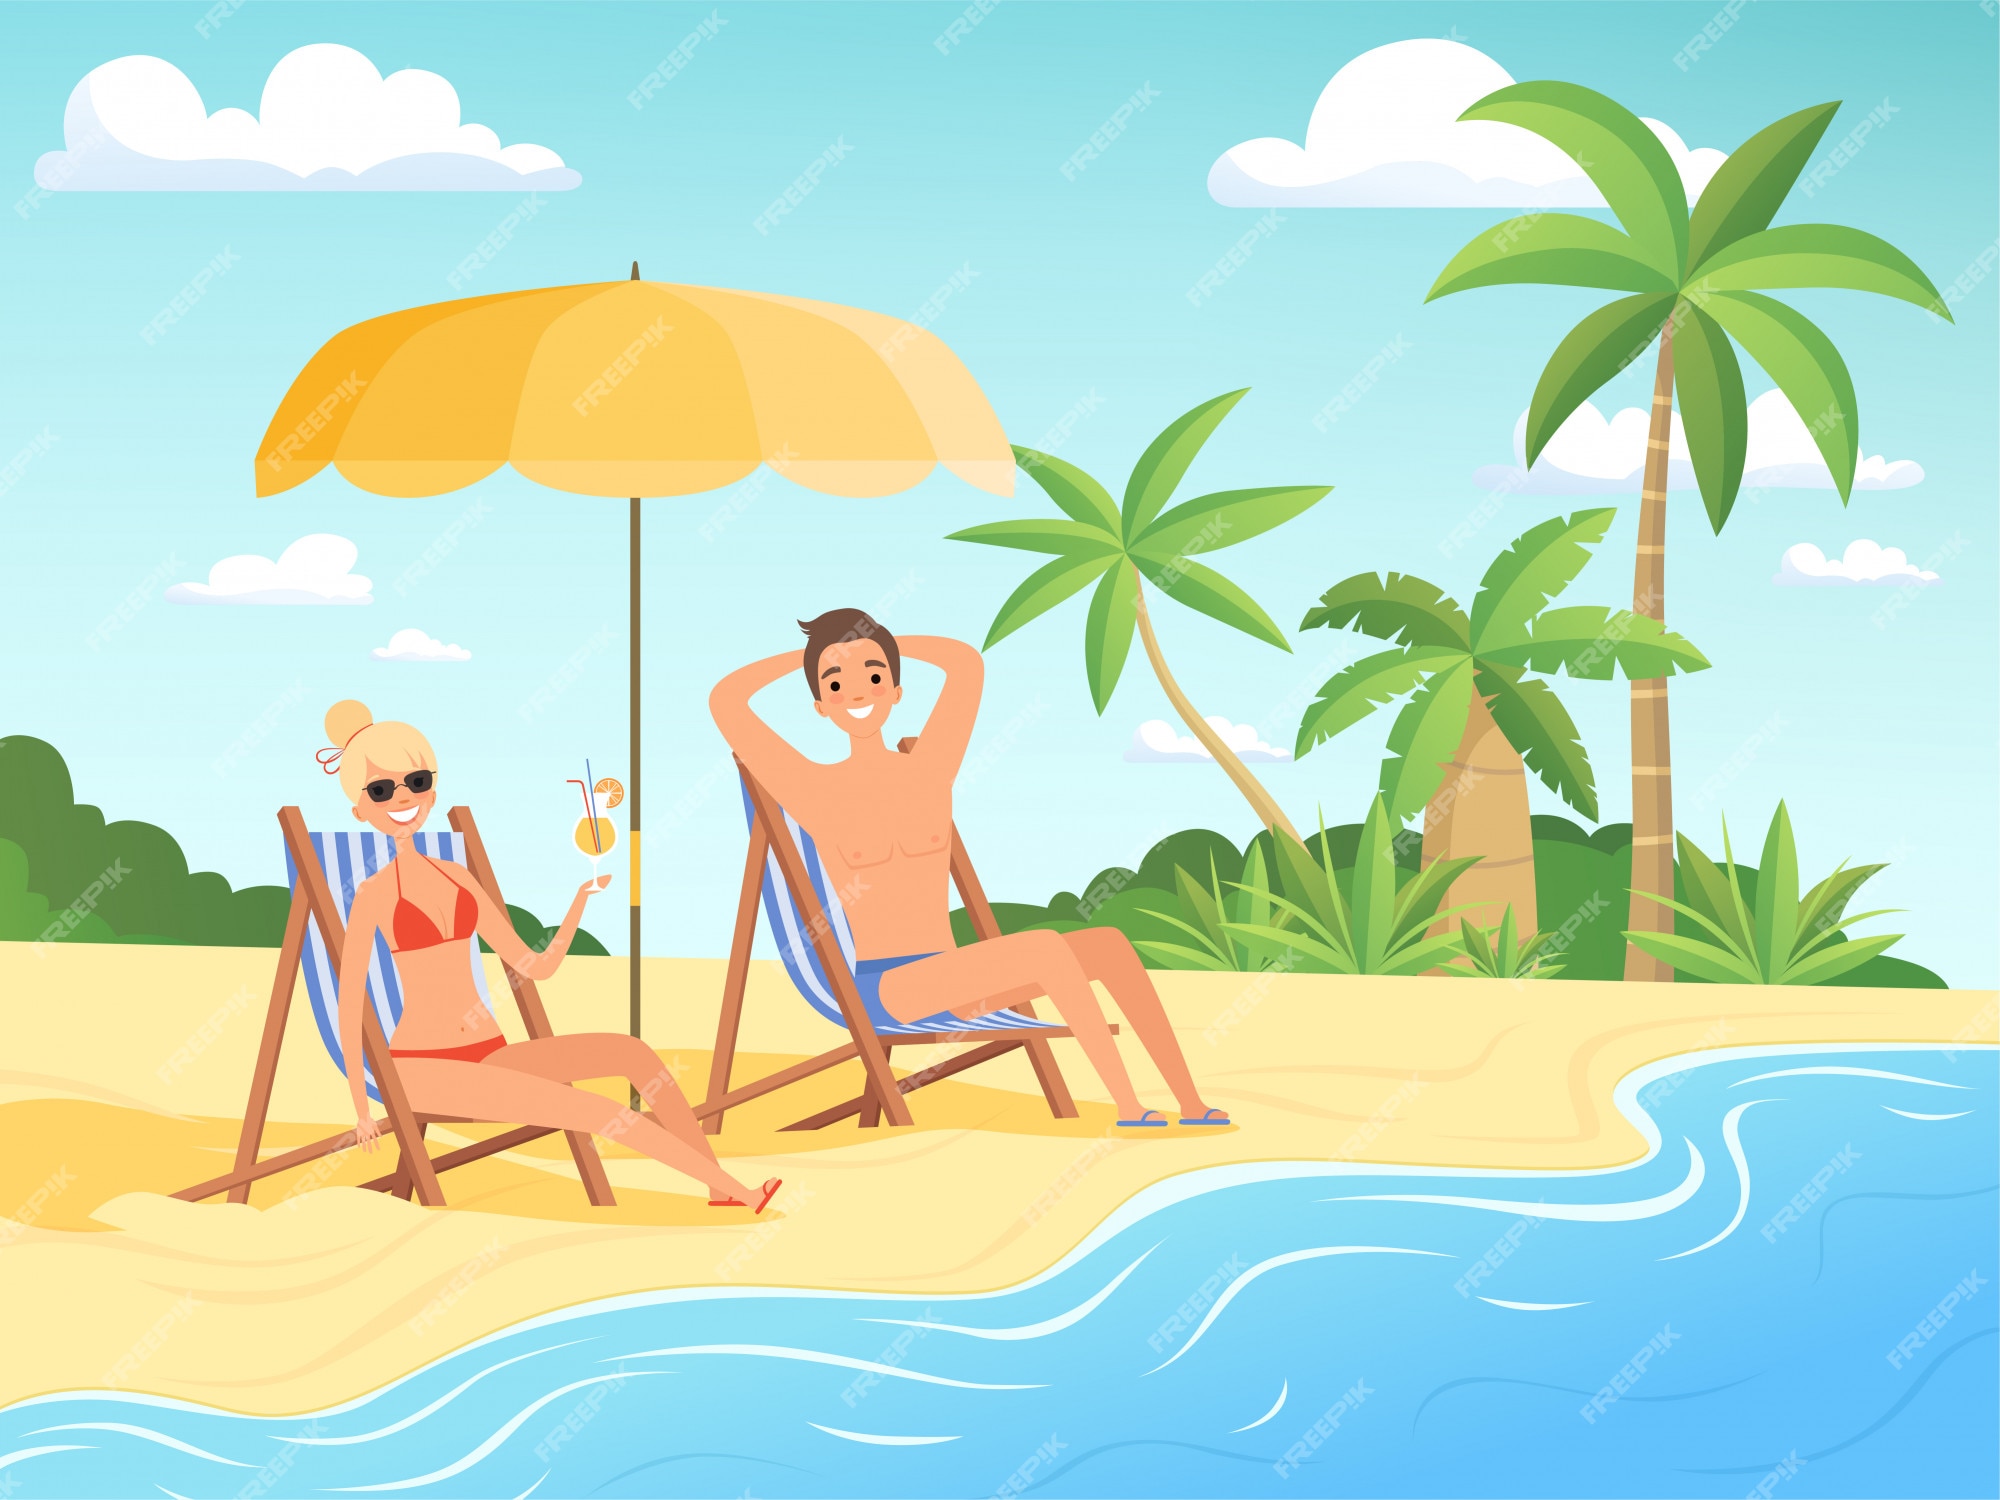 personajes-verano-persona-masculina-femenina-descansar-playa-dibujos-animados-fondo-costero-vacaciones-verano_80590-6957.jpg